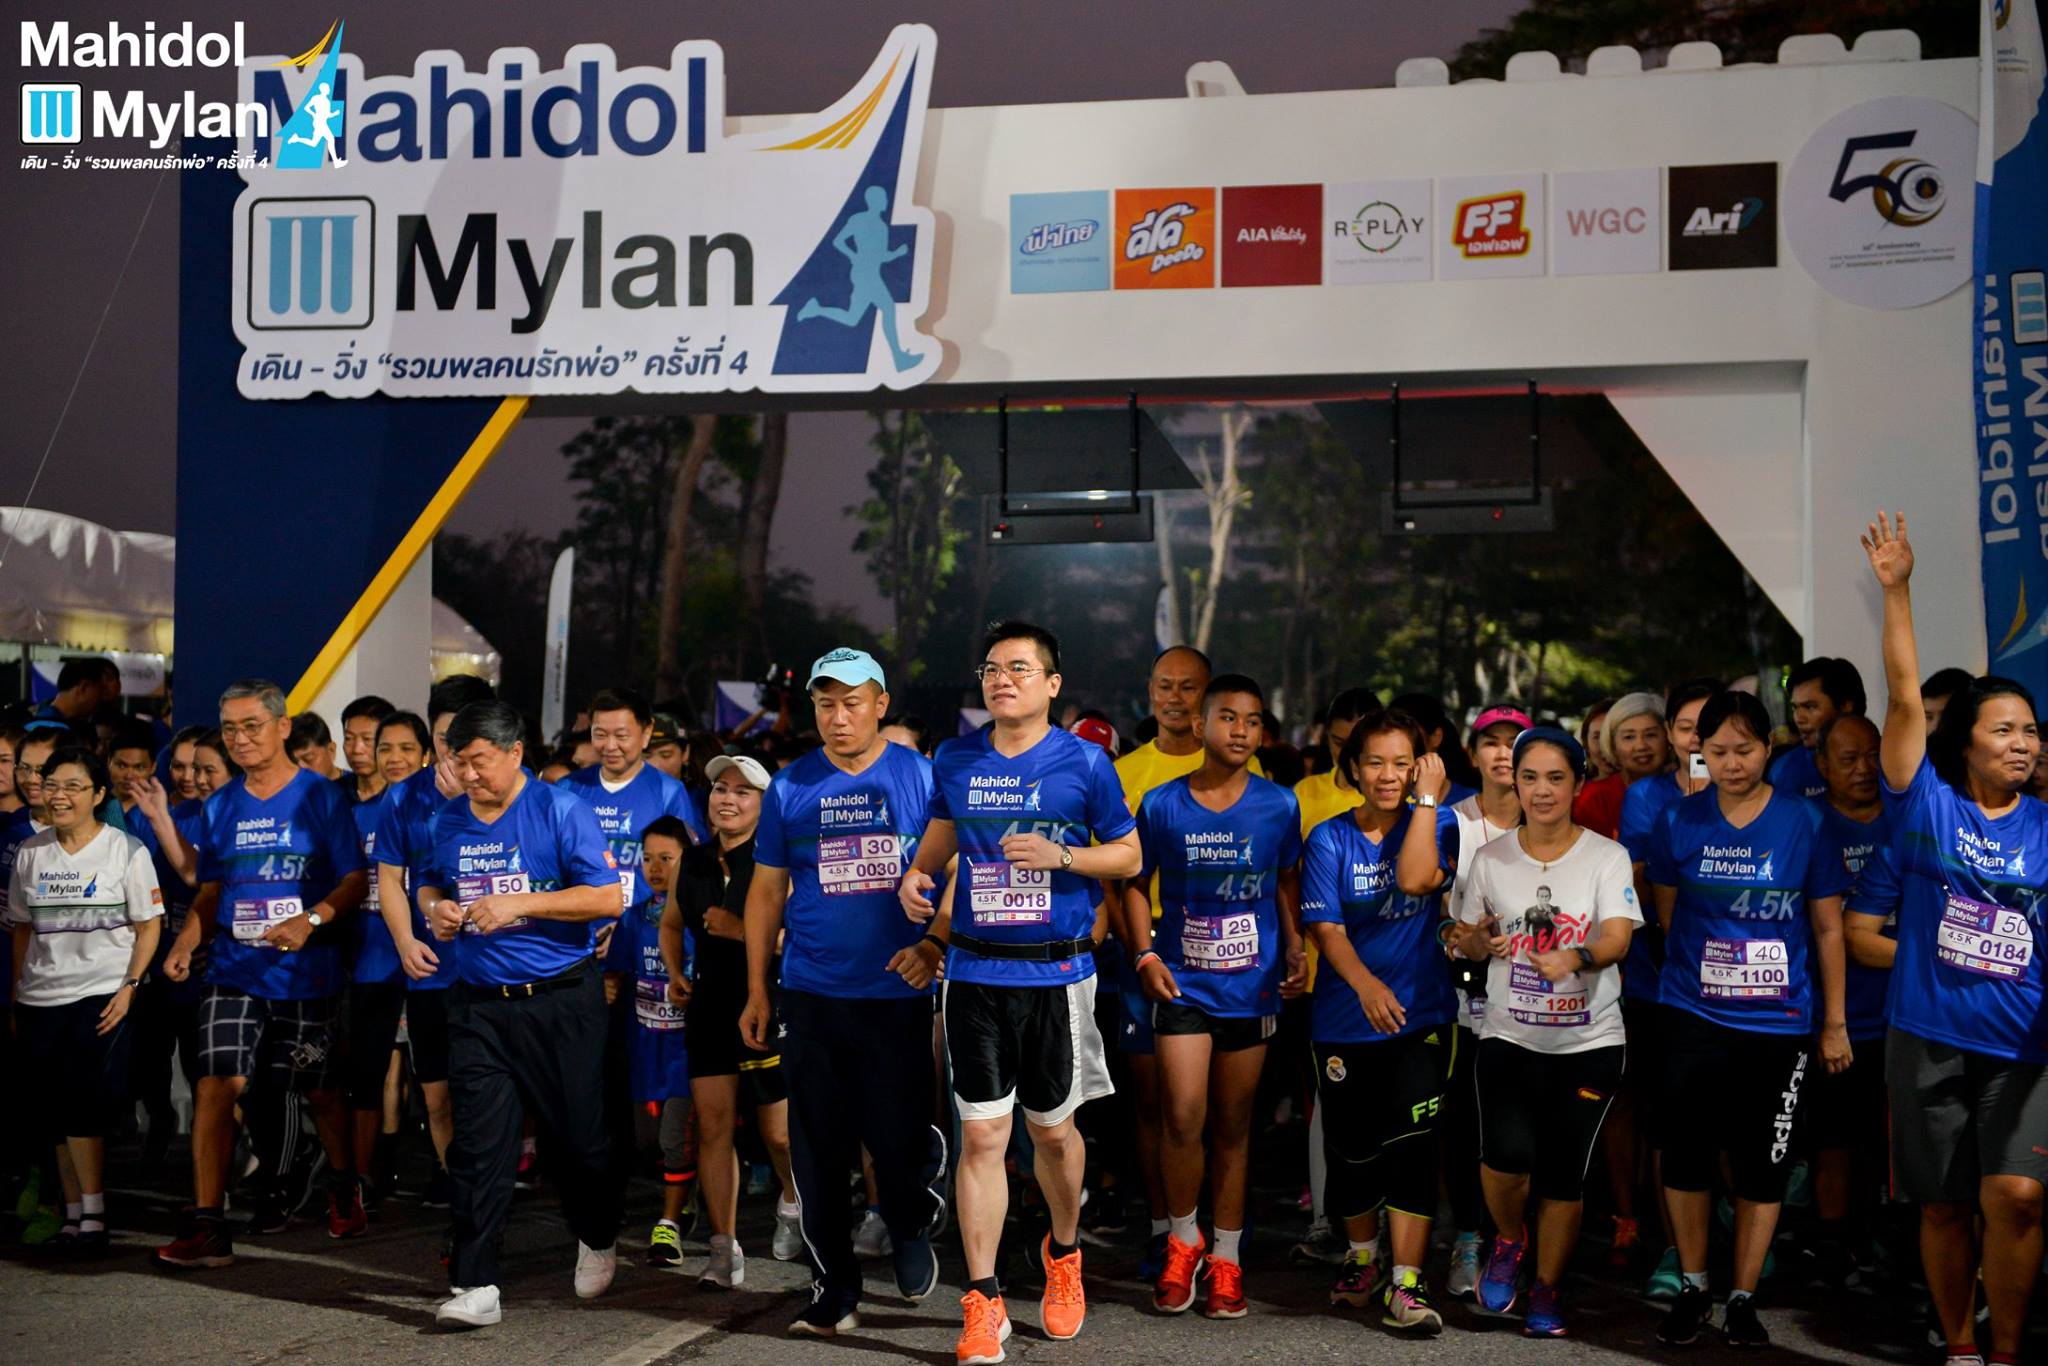 งาน Mahidol Mylan 2018 เดิน-วิ่ง "รวมพลคนรักพ่อ" ครั้งที่ 4